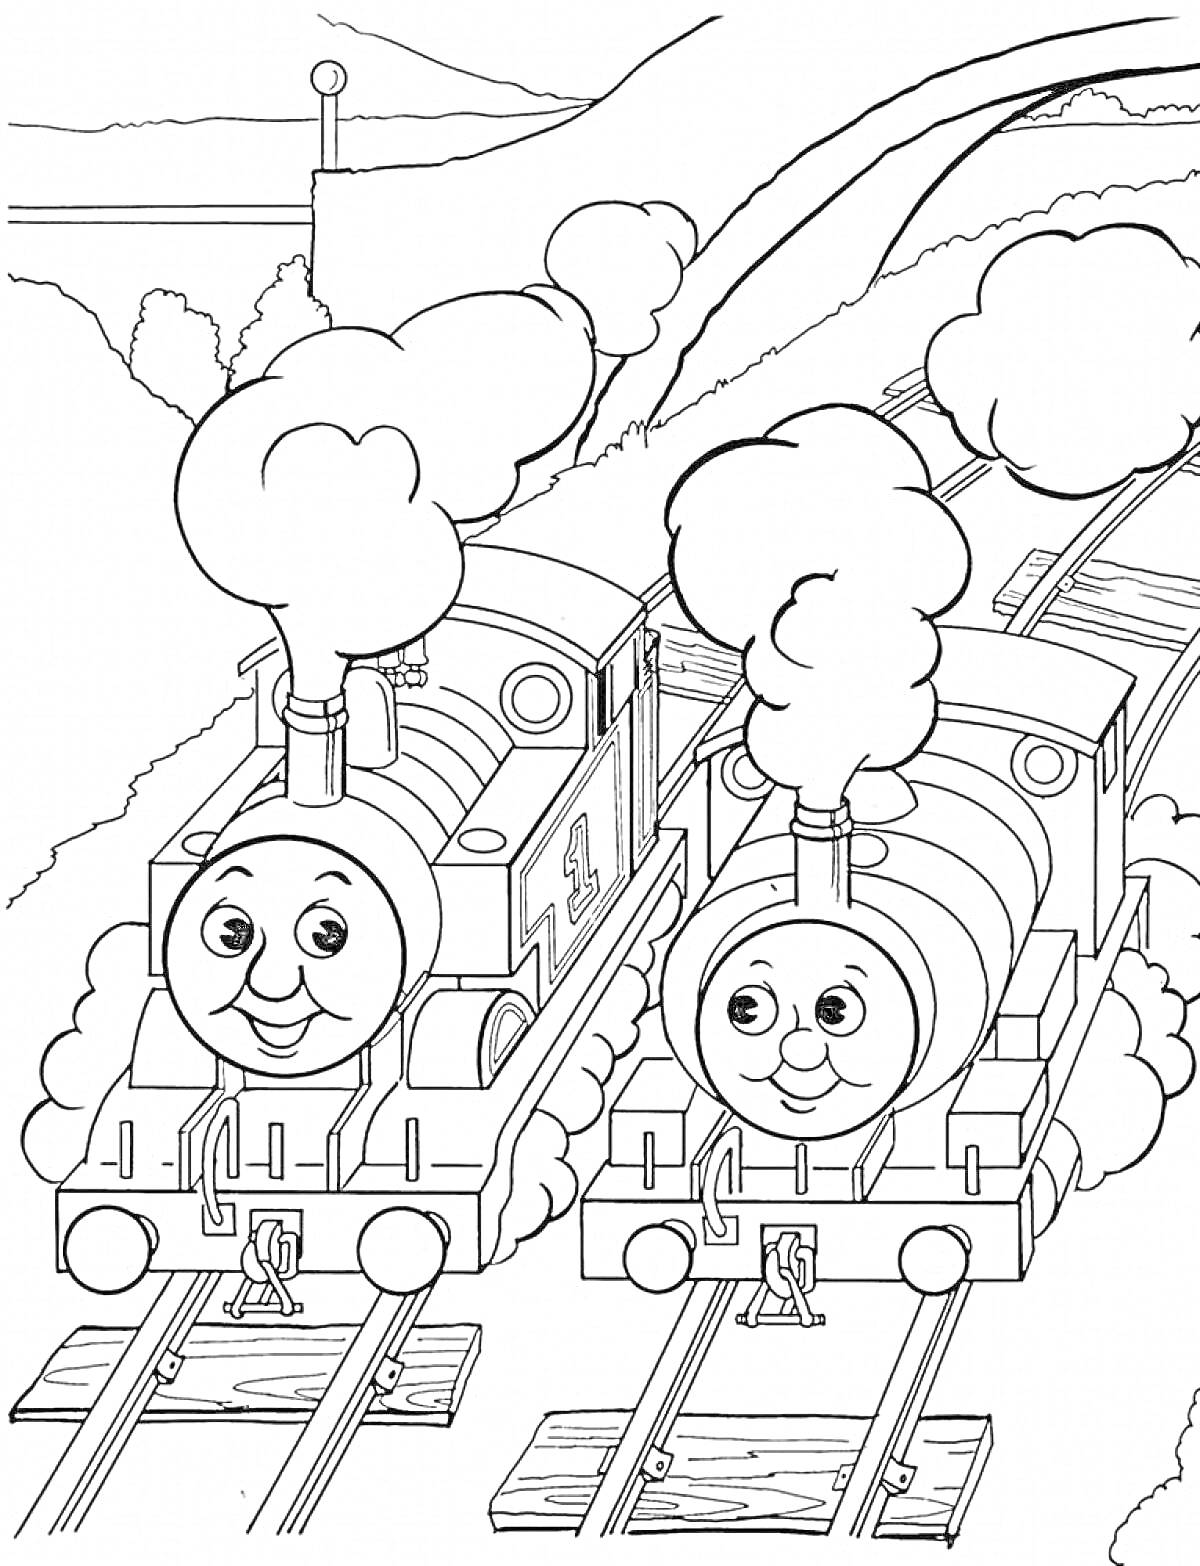 Раскраска Паровозик Томас и его друг на железнодорожных путях, с дымом из труб и деревьями на заднем плане